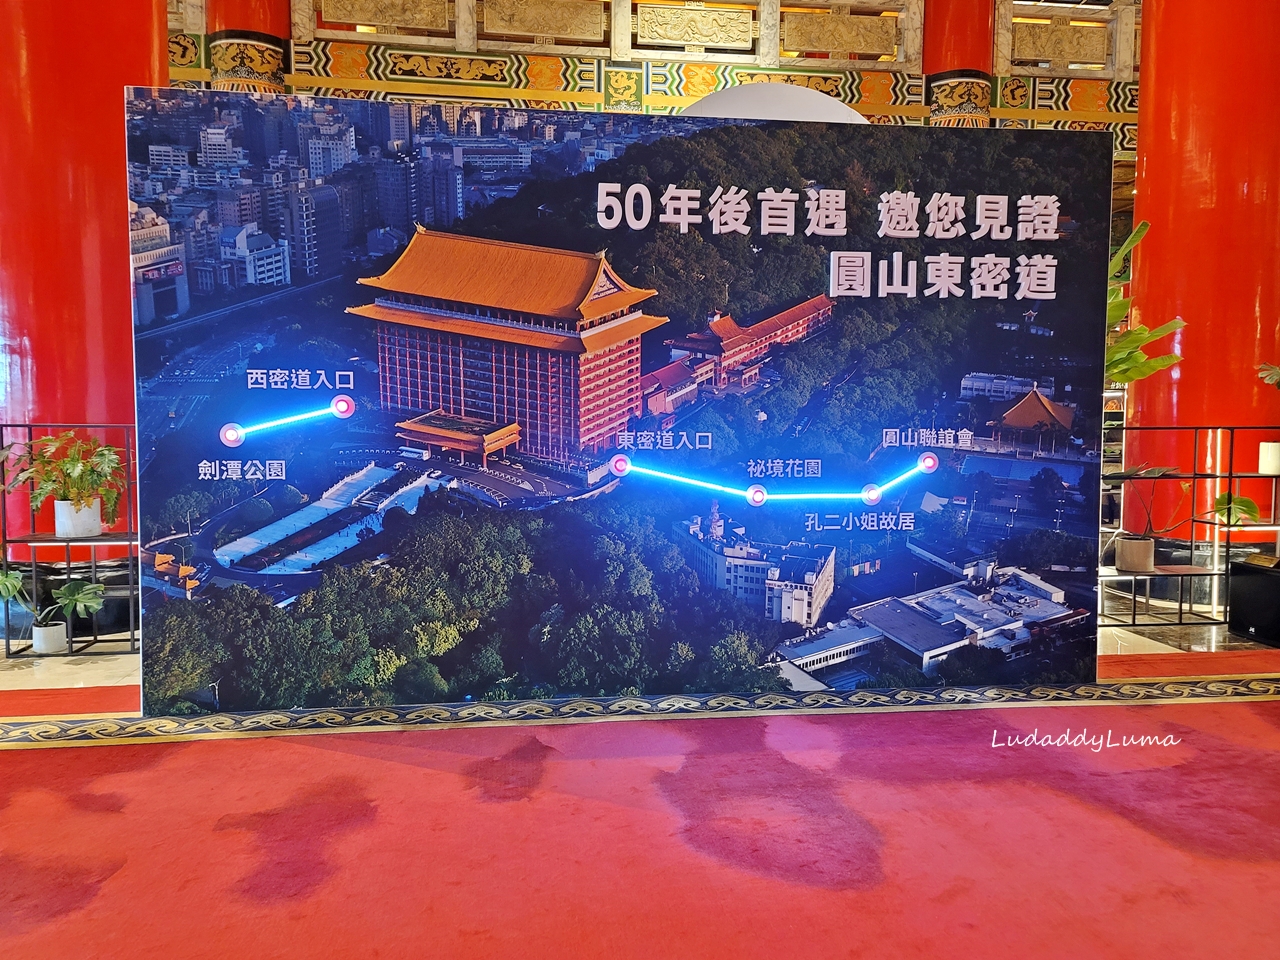 台北圓山飯店東密道導覽行程，揭開神秘面紗文化體驗、金龍餐廳用餐賞景